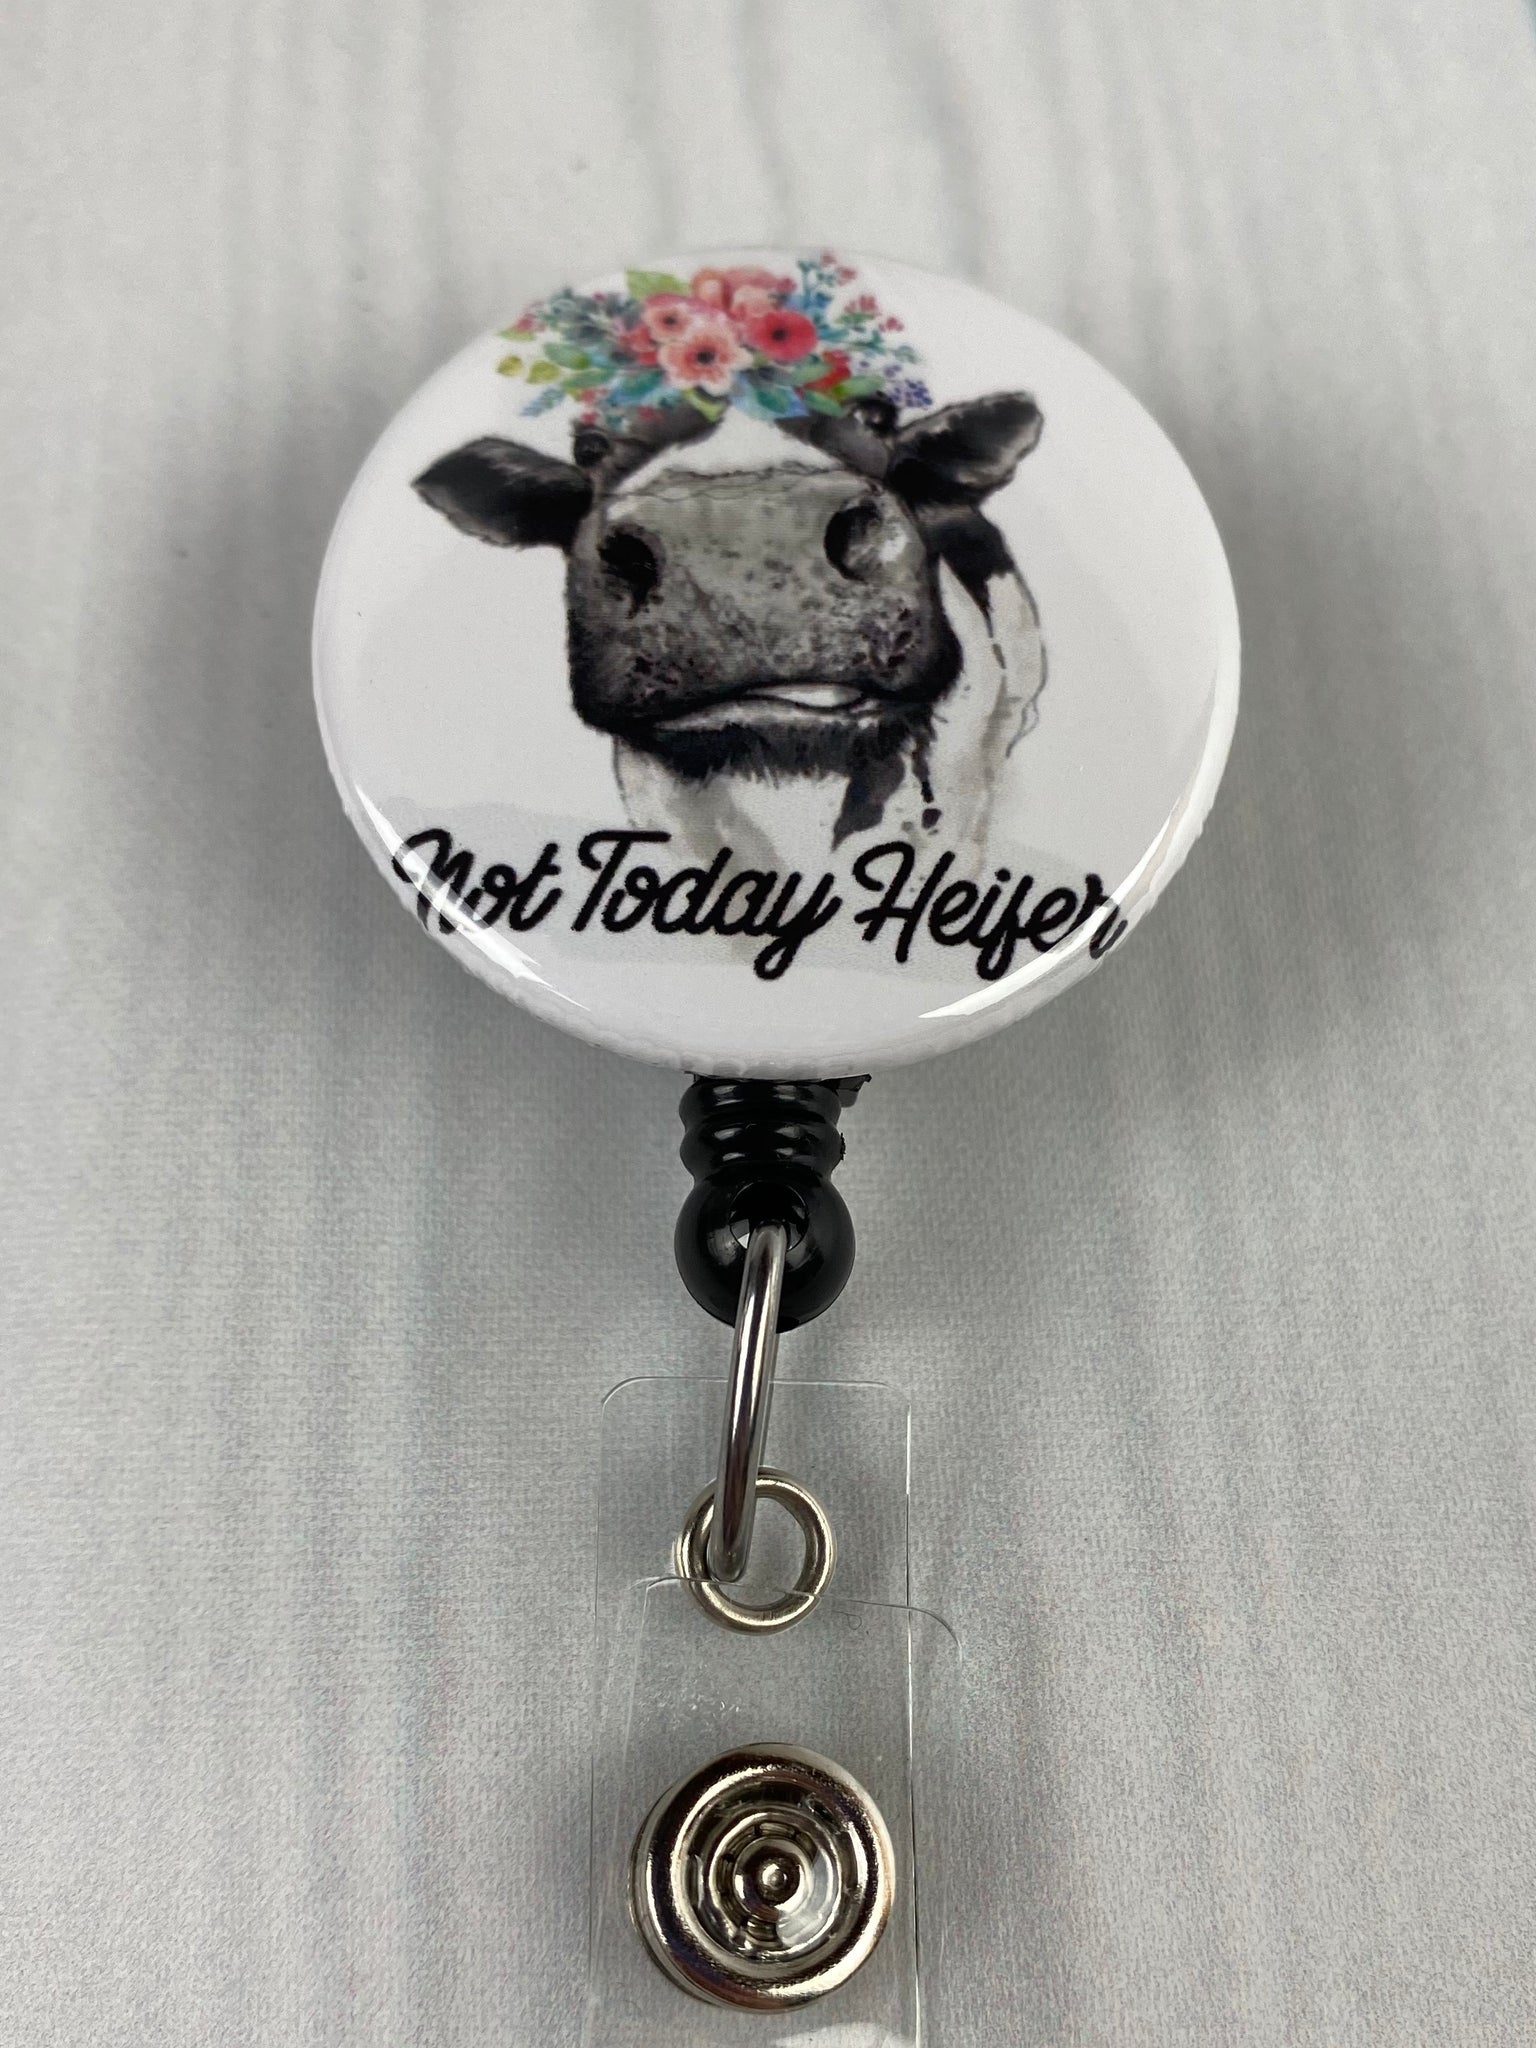 Salty Heifer ~ Funny Badge Reel ~ ID holder ~ Nurse Badge Reel ~ Teach –  My4BadgeBuilders